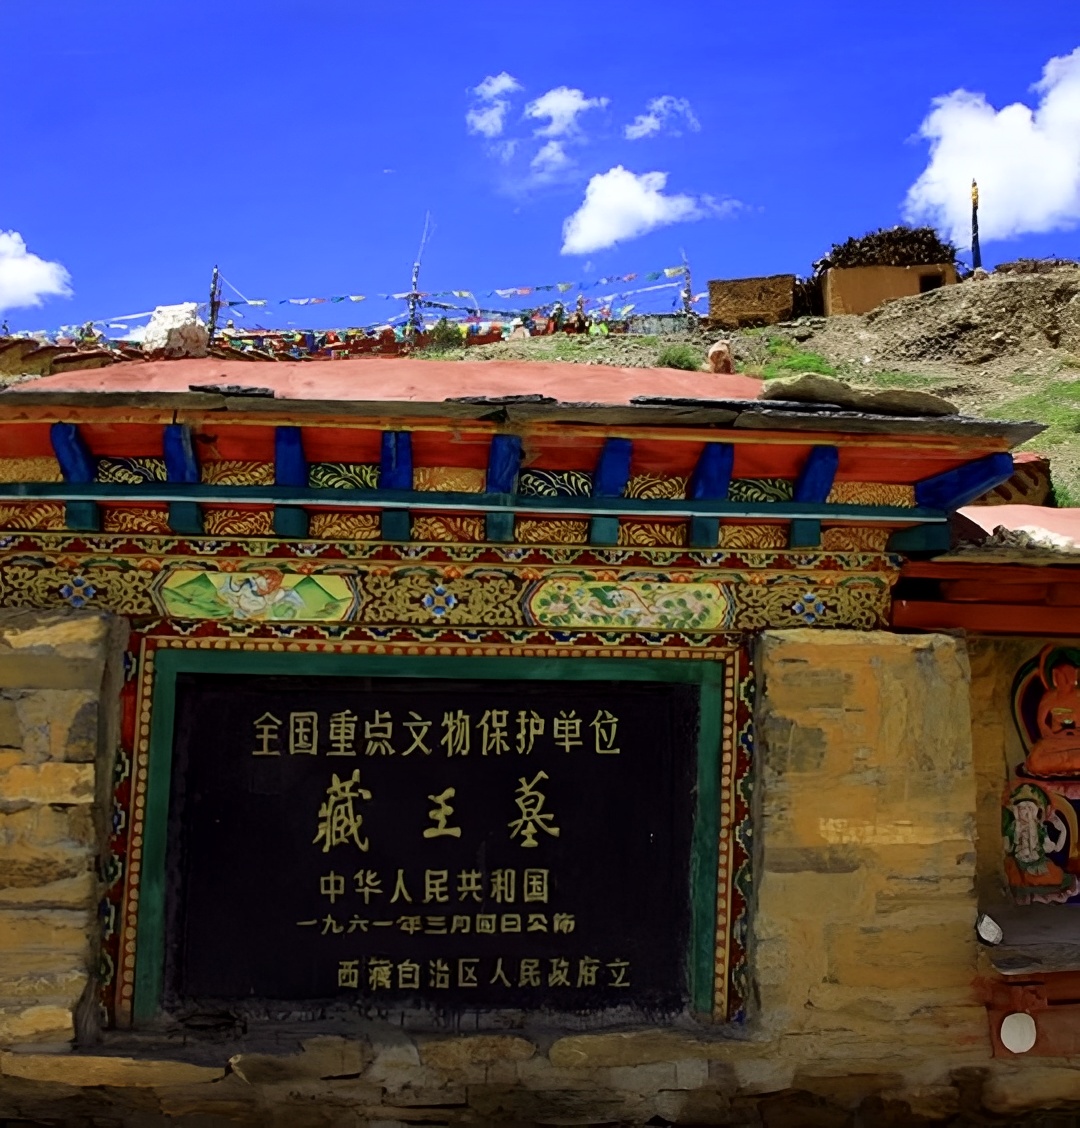 藏王墓是西藏自治区山保存较好、规模较大大的王陵，包括松赞干布墓、赤德松赞之陵，松赞干布墓封土顶部建有